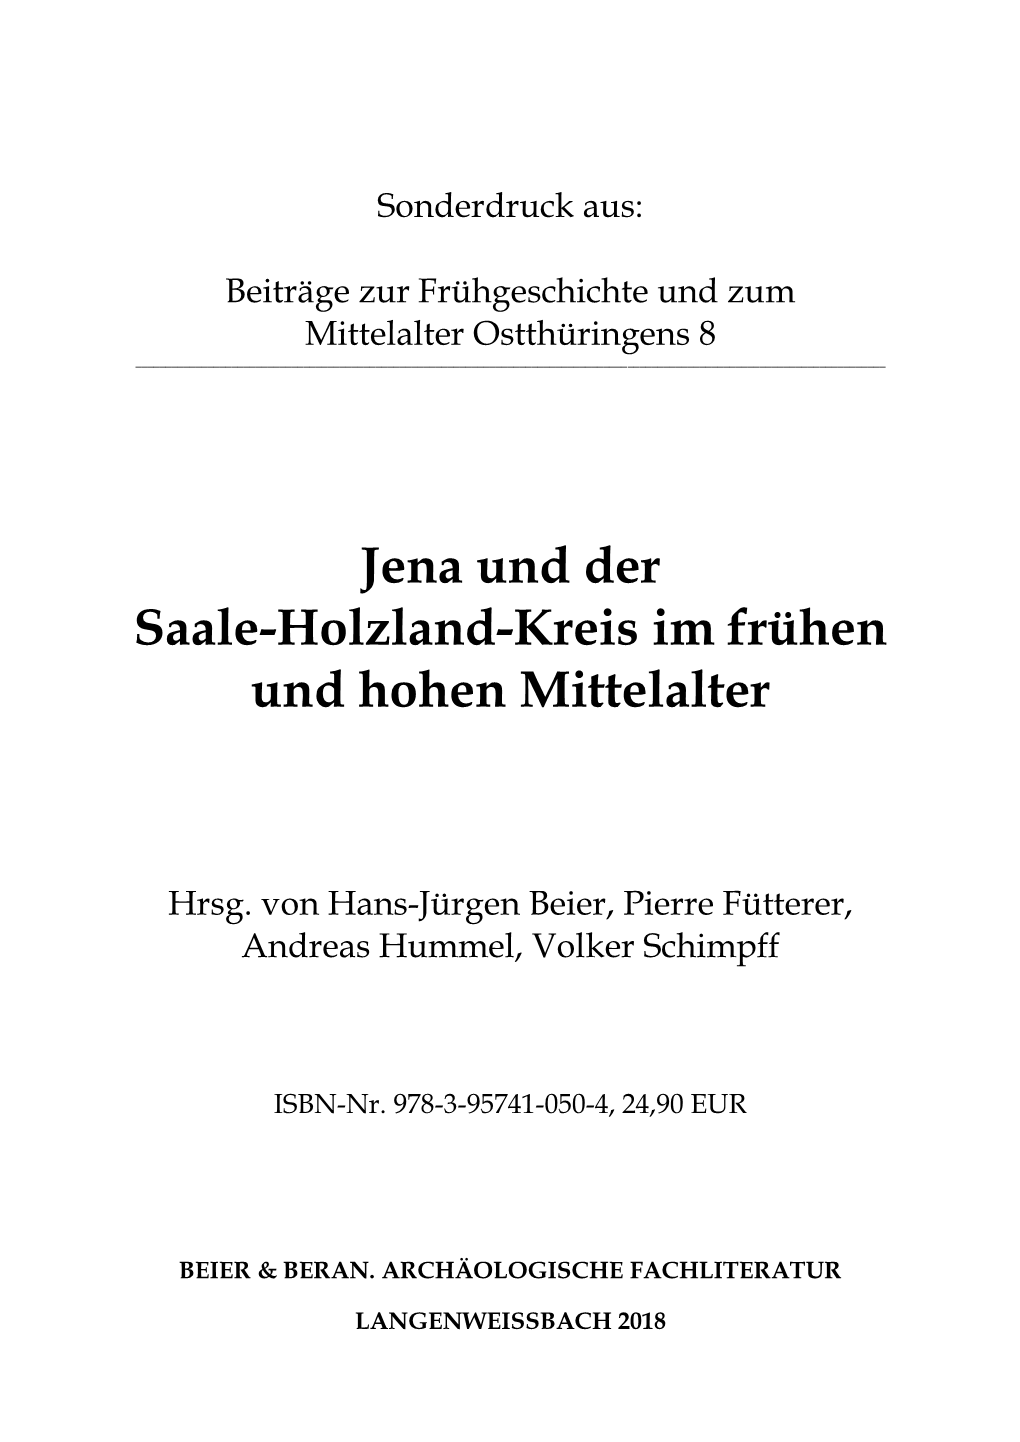 Jena Und Der Saale-Holzland-Kreis Im Frühen Und Hohen Mittelalter